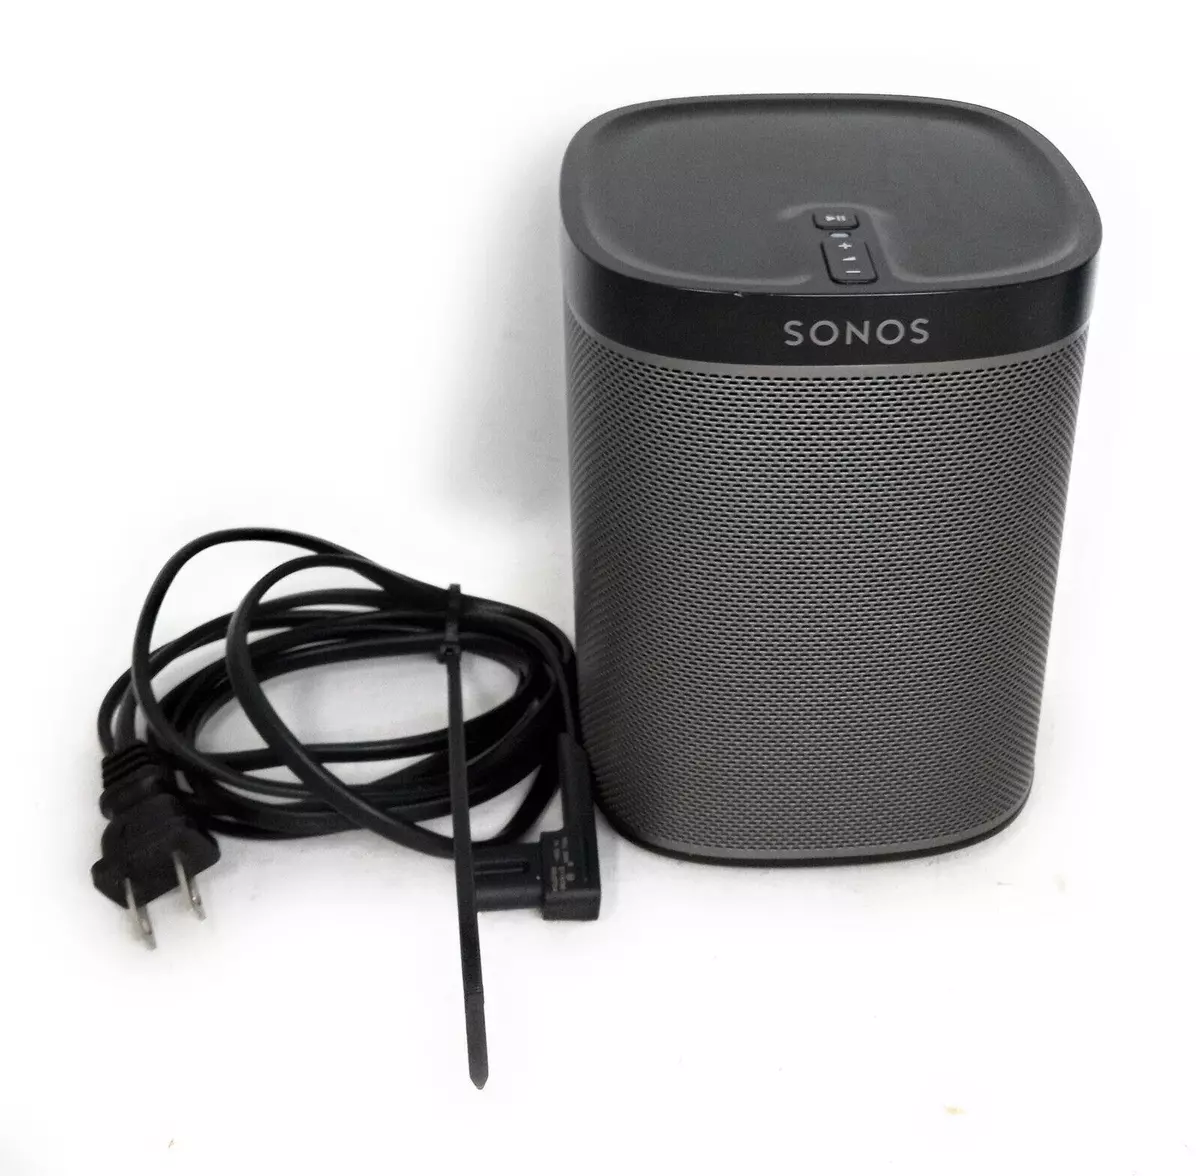 design band Spiller skak Sonos PLAY 1 Wireless Speaker - Black - Free shipping | eBay